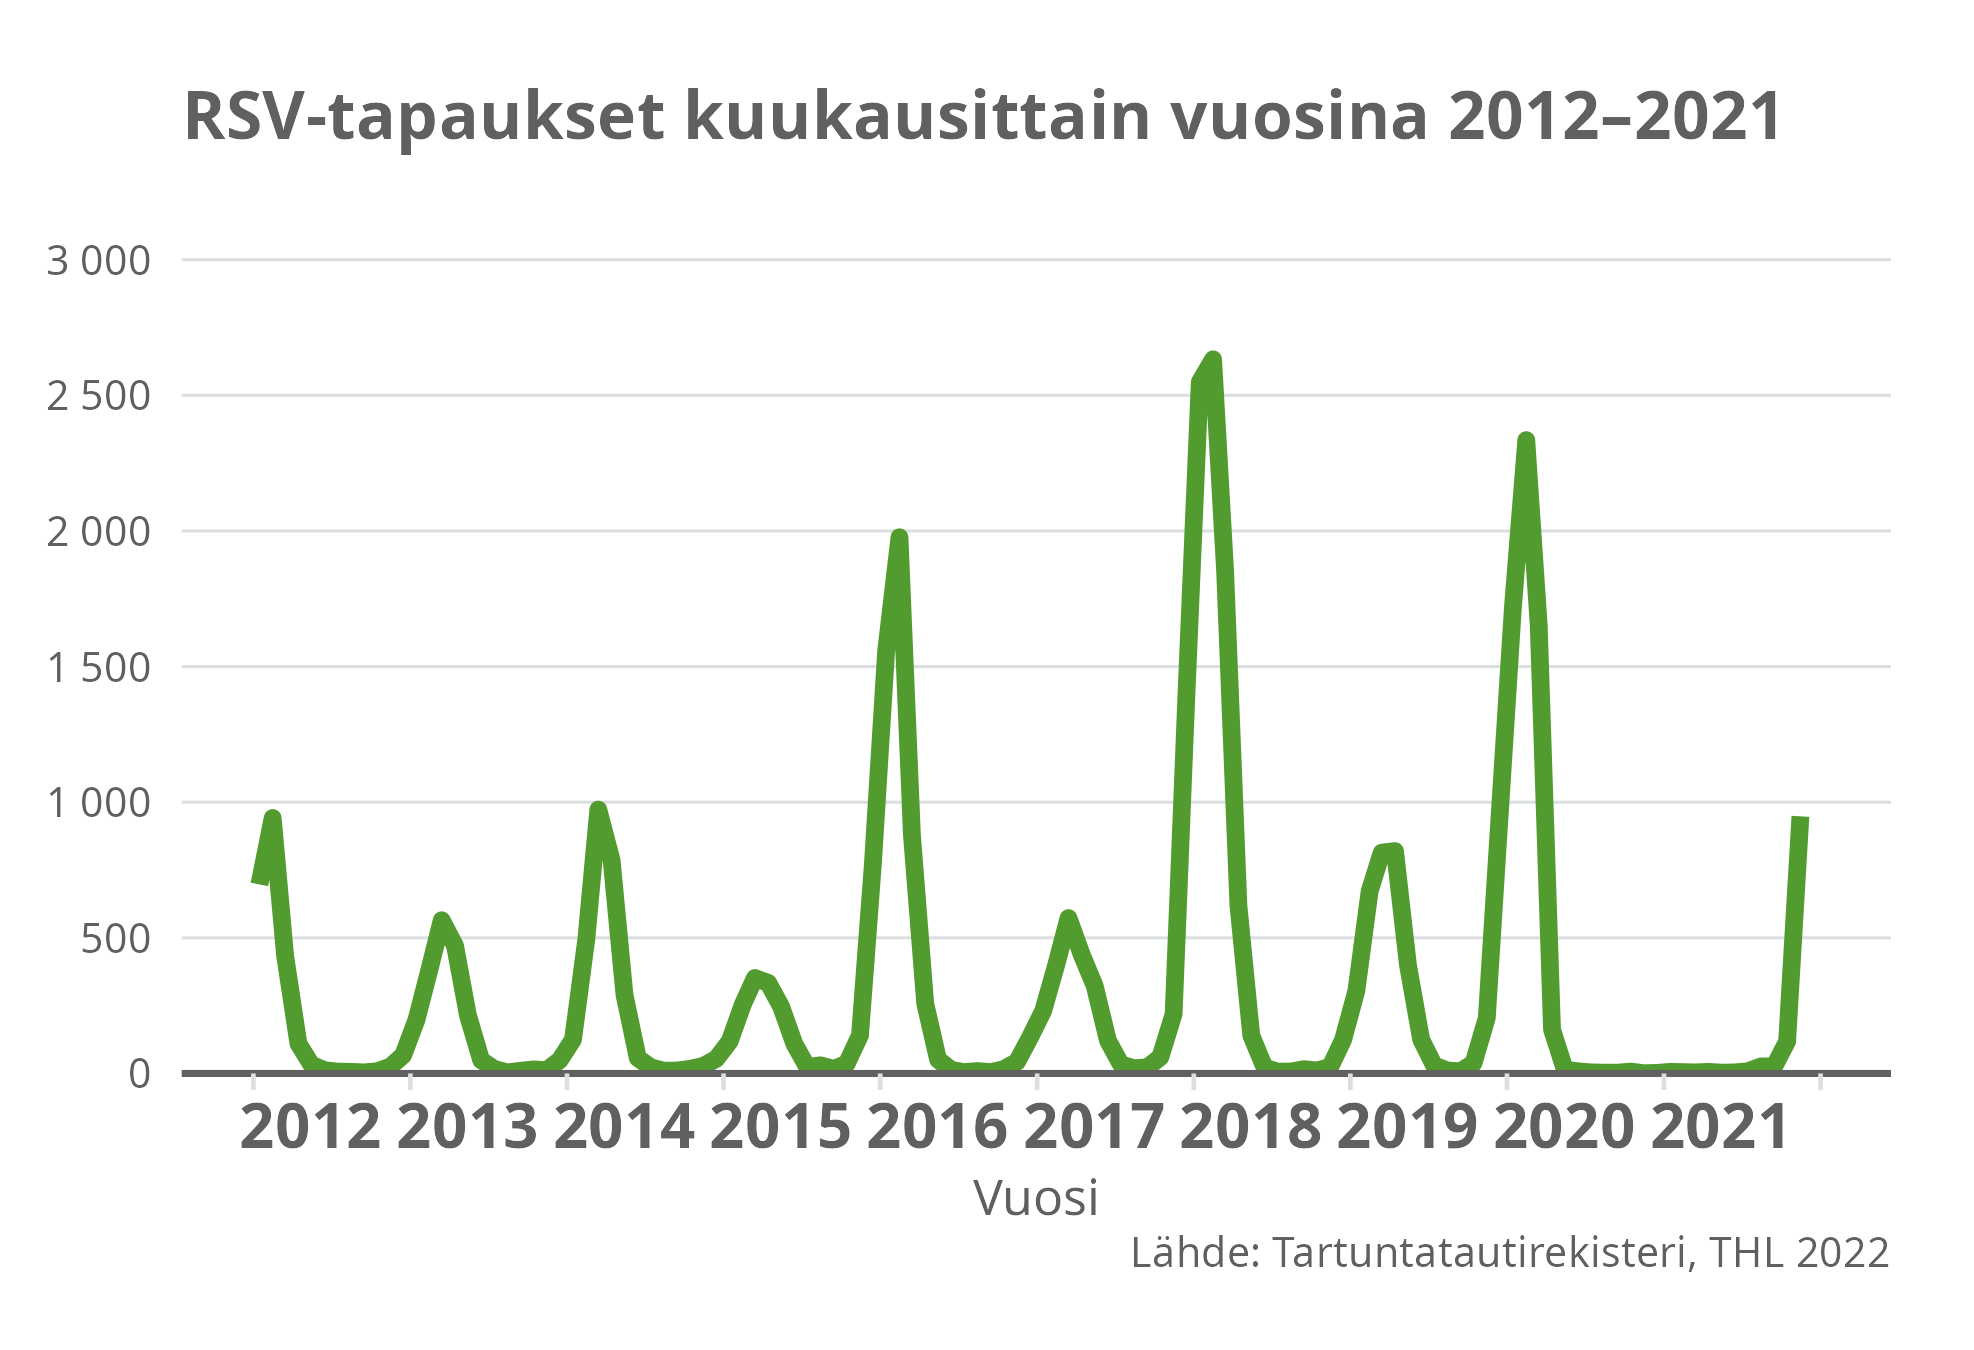 RSV-tapaukset kuukausittain vuosina 2012-2021.